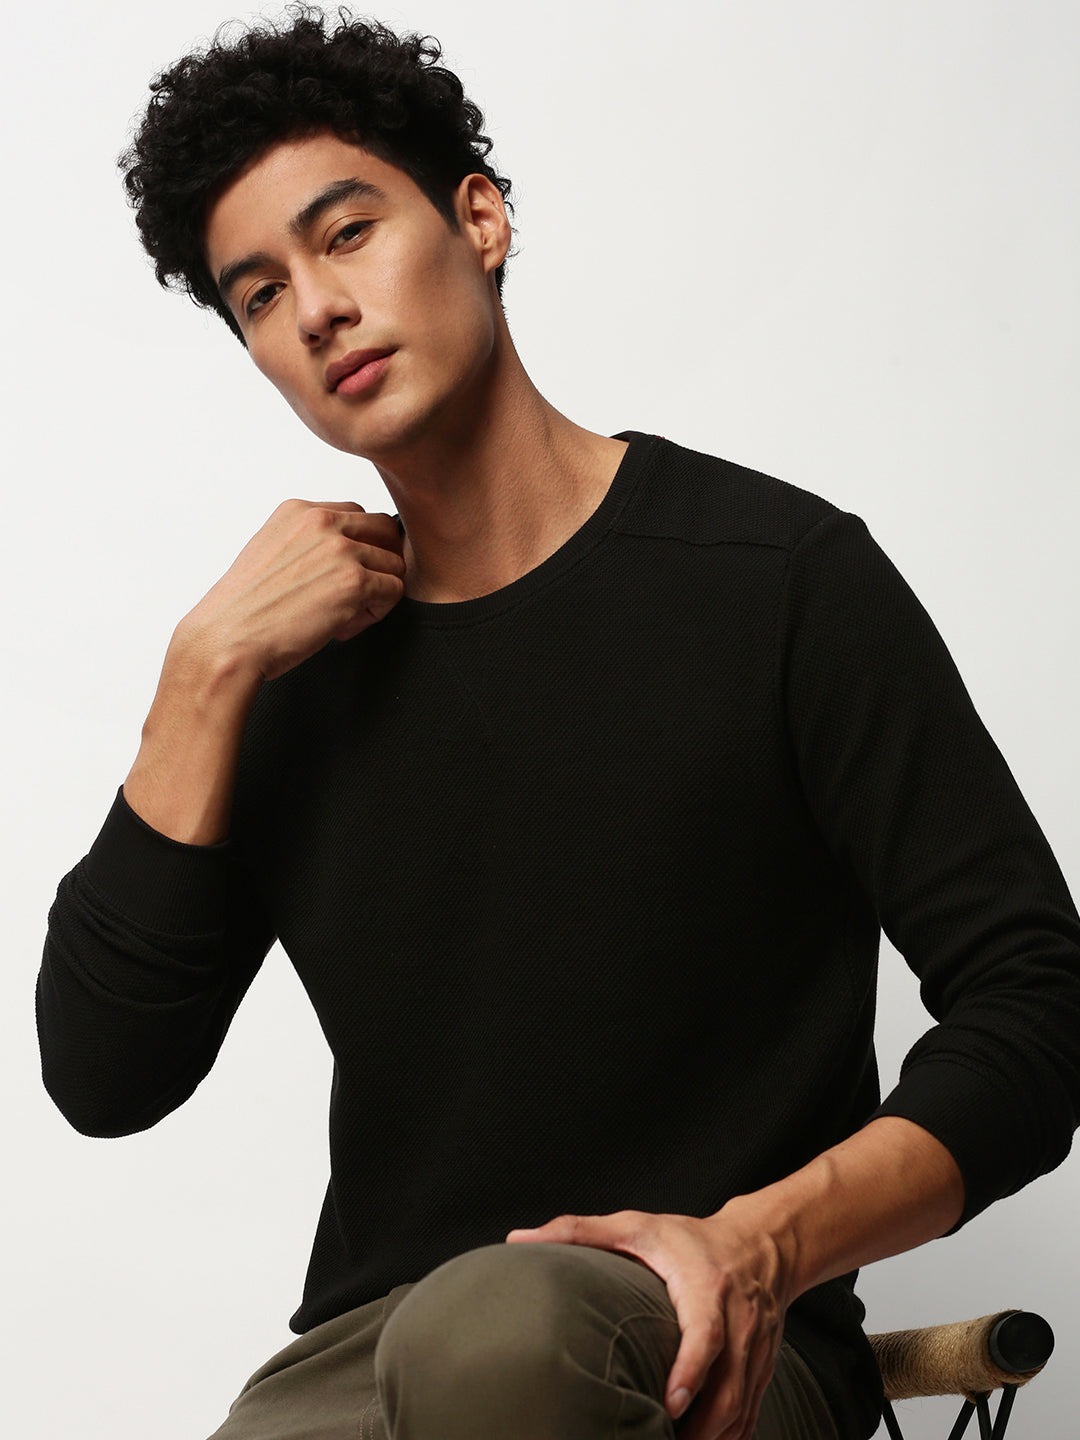 Men Black Solid Casual Sweatshirts